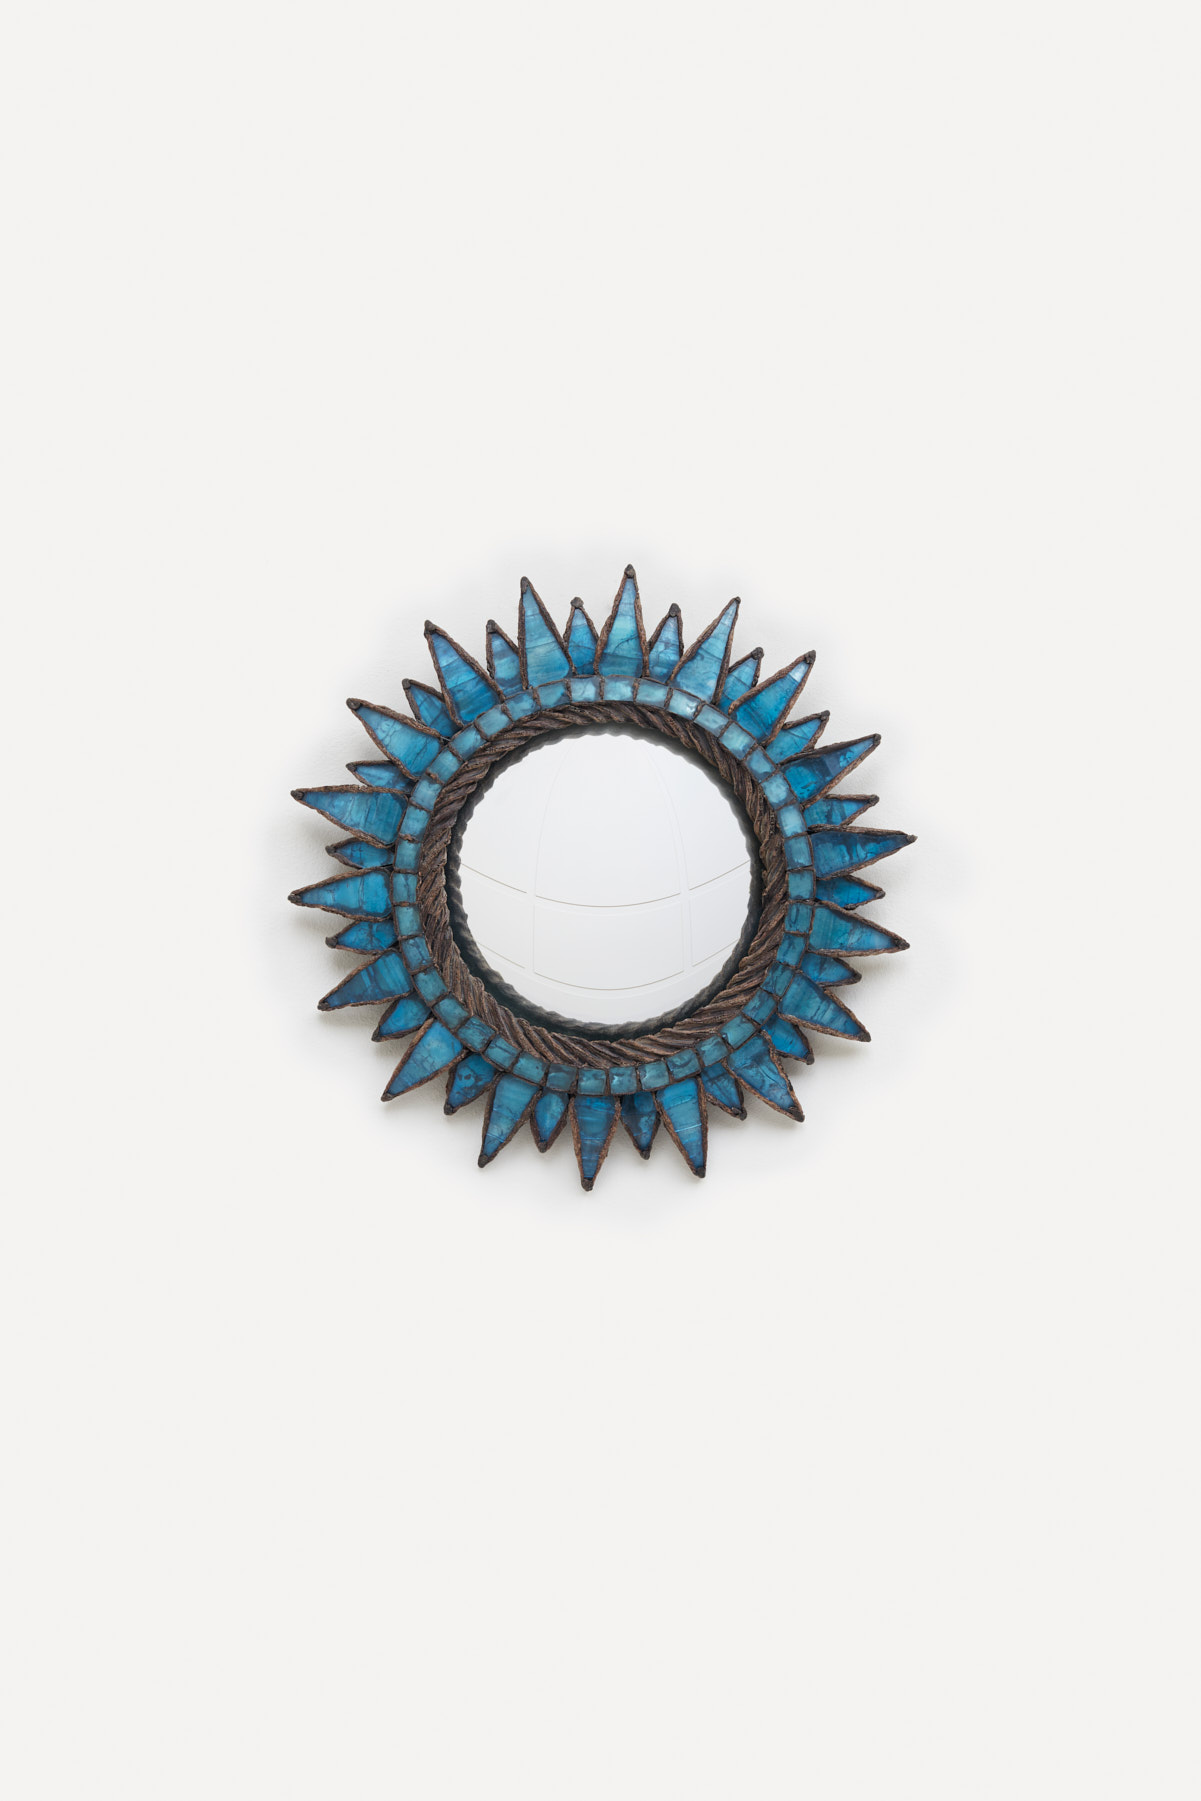 Line Vautrin, blue “Soleil à pointes n°1” mirror, vue 01